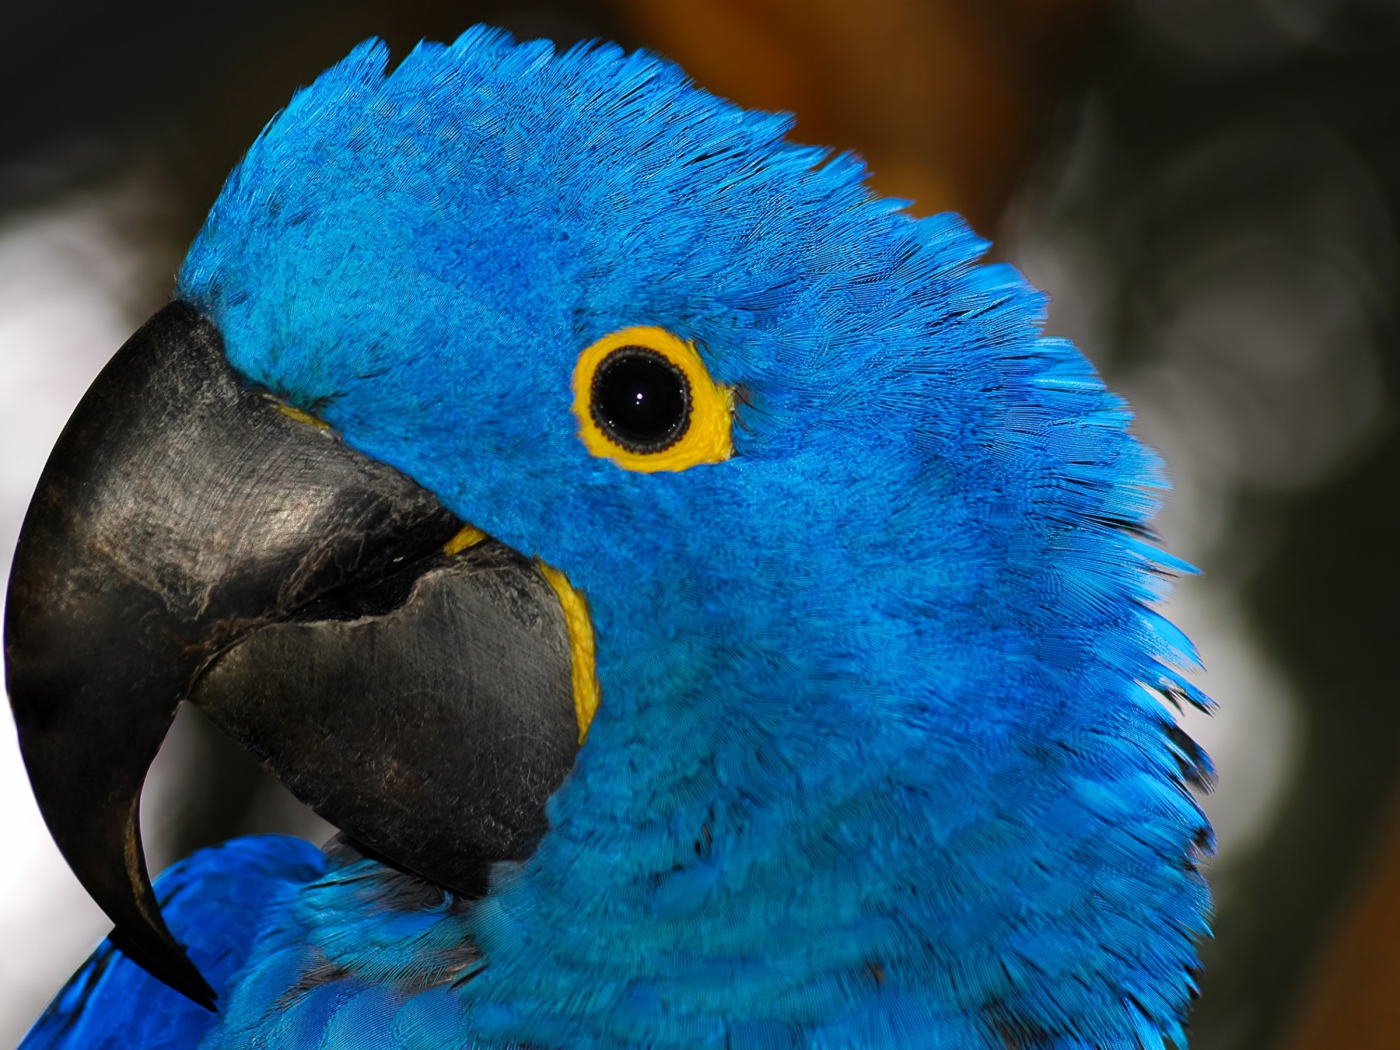 Большой голубой попугай с острым клювом крупным планом